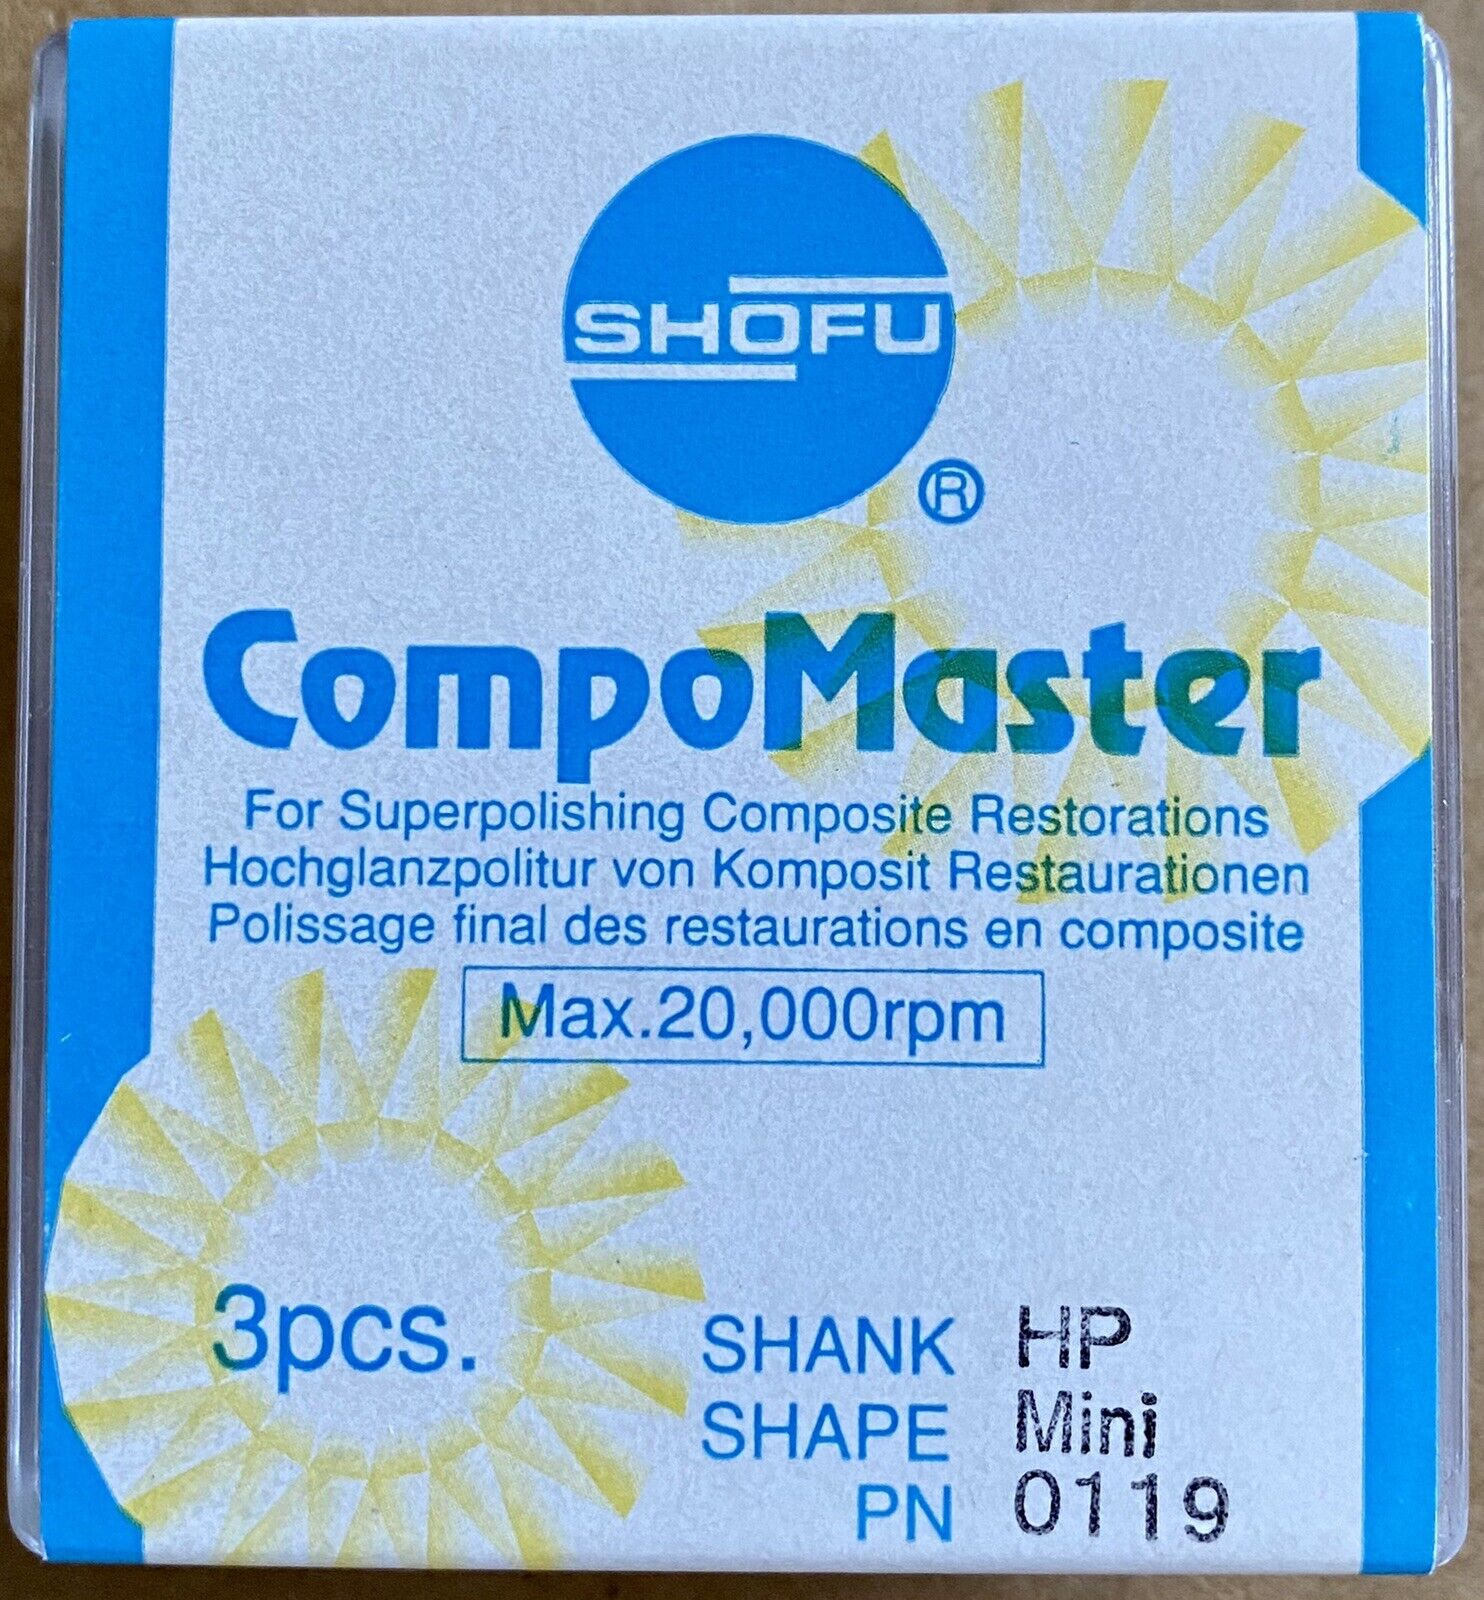 Dental Abrasives 8 pc Diamond Shofu CompoMaster Shank HP Shape Mini PN 0119